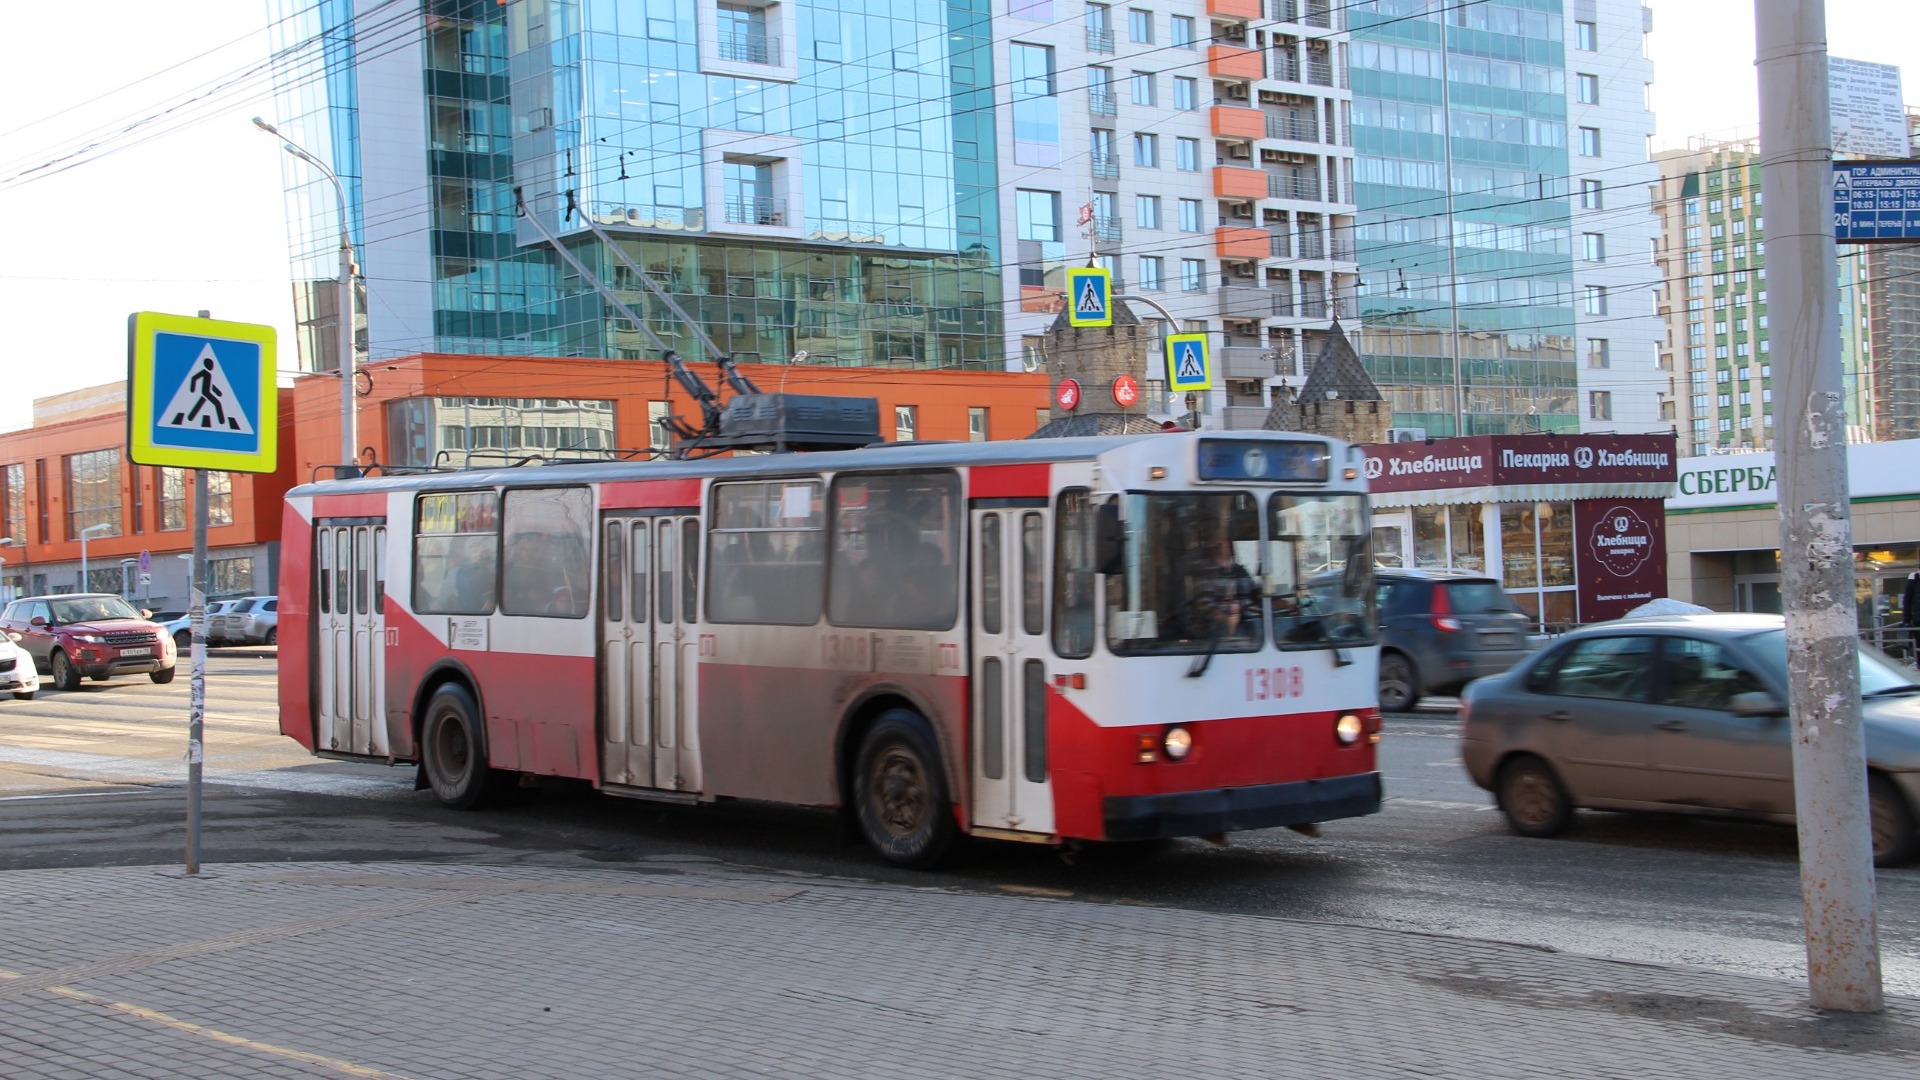 Двухлетний мальчик пострадал после падения в троллейбусе в Екатеринбурге